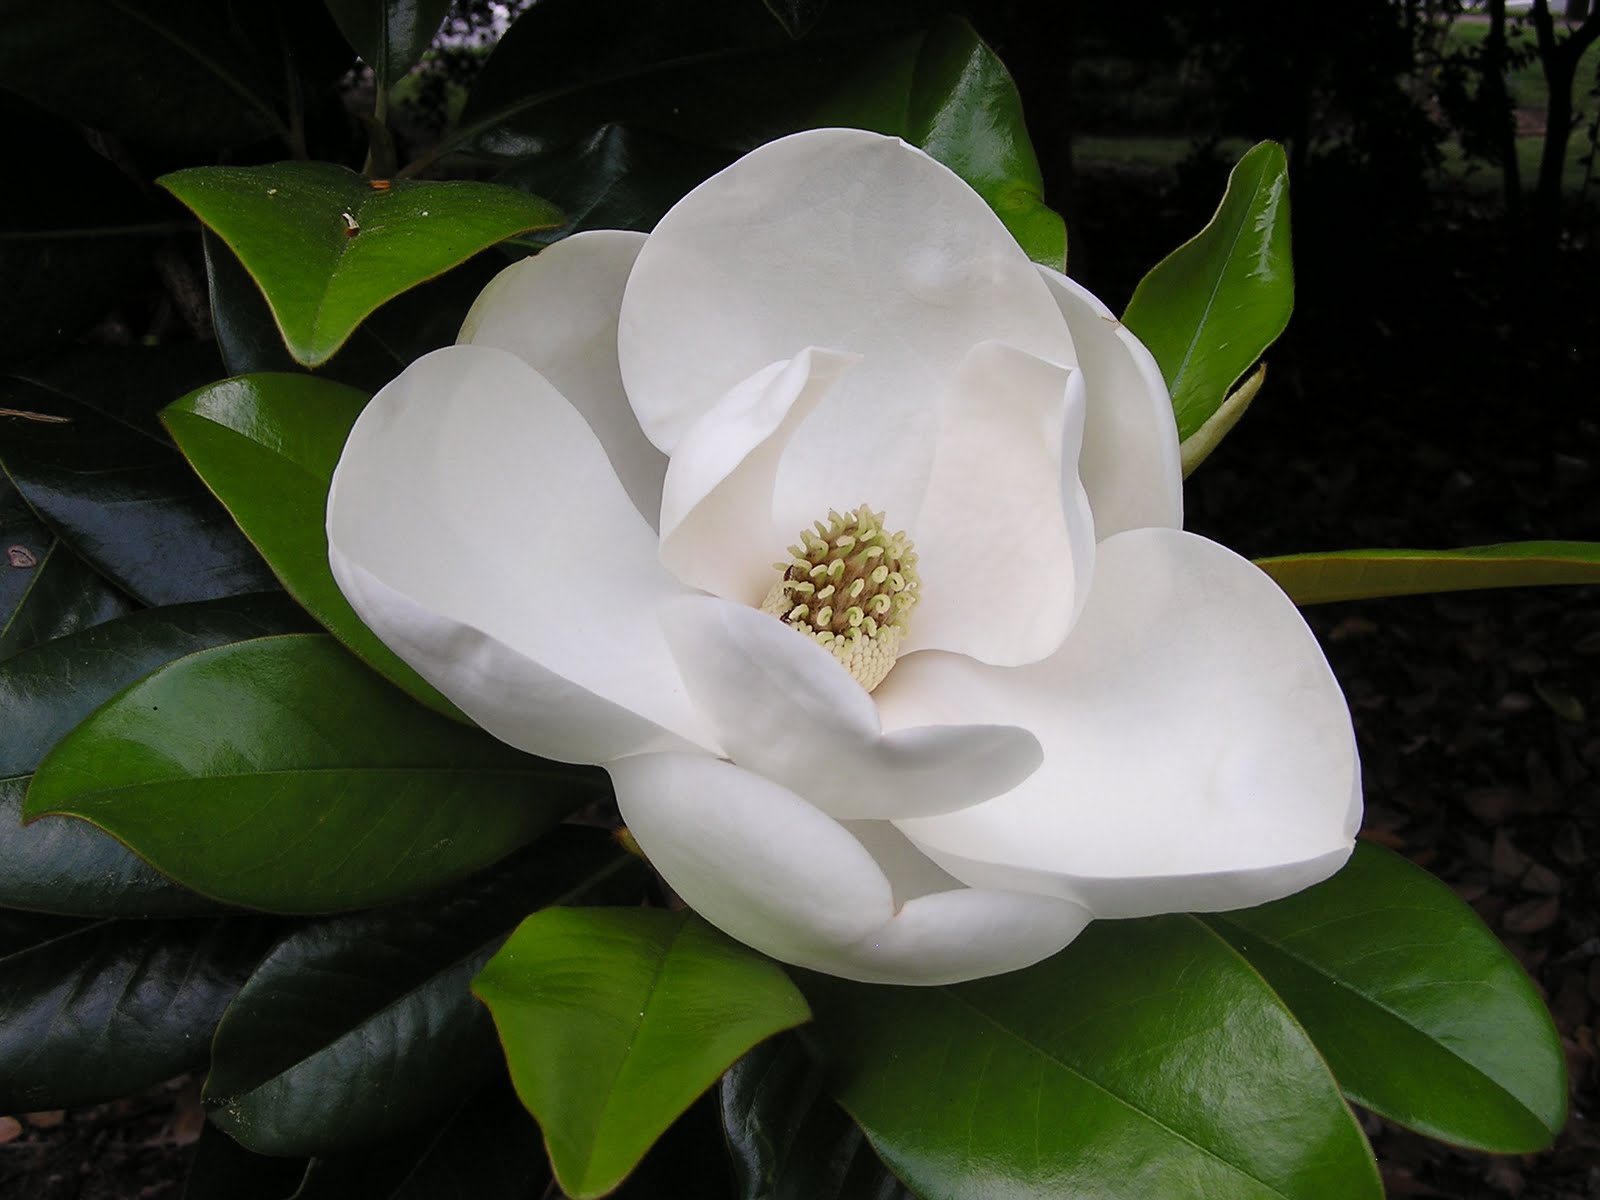 Magnolia flower written in Arabic